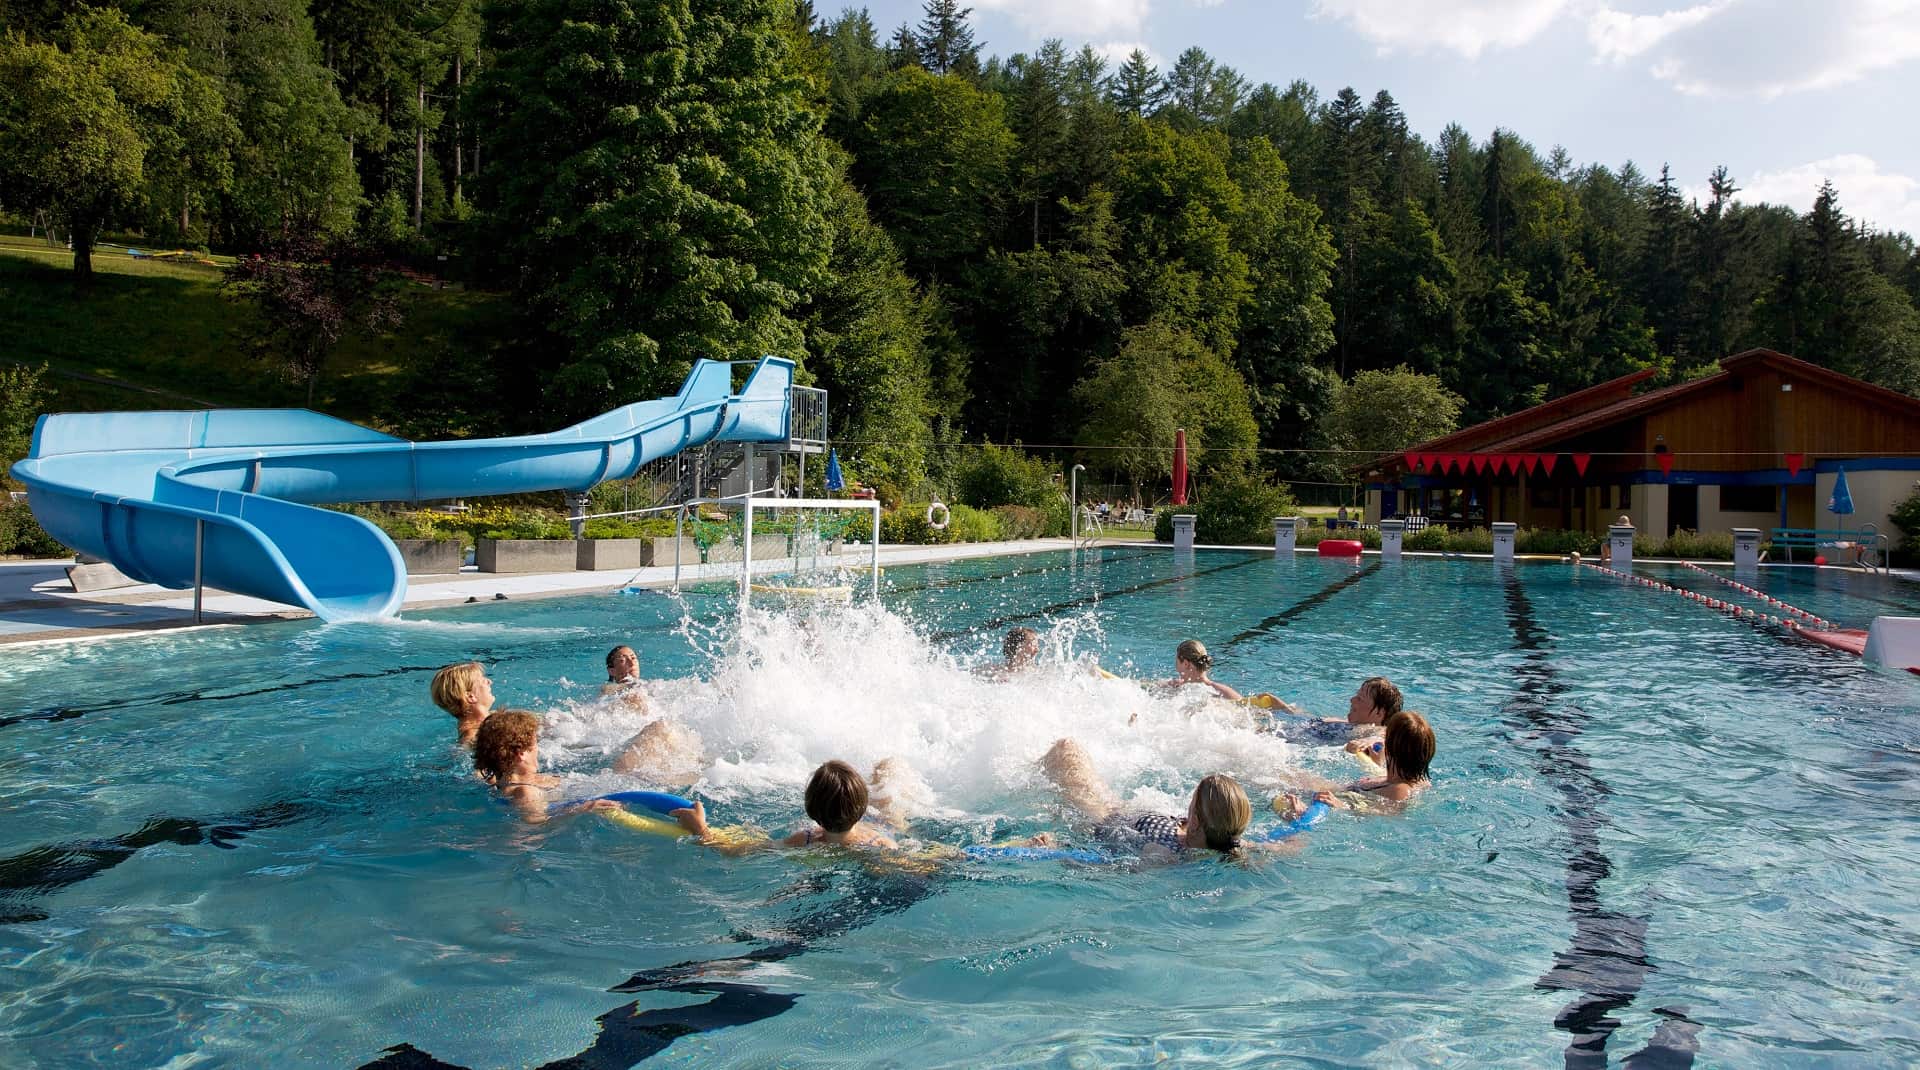 Frauen bilden im Schwimmbecken einen Kreis. Im Hintergrund ist steht die blaue Wasserrutsche ins Freibad Obertal.